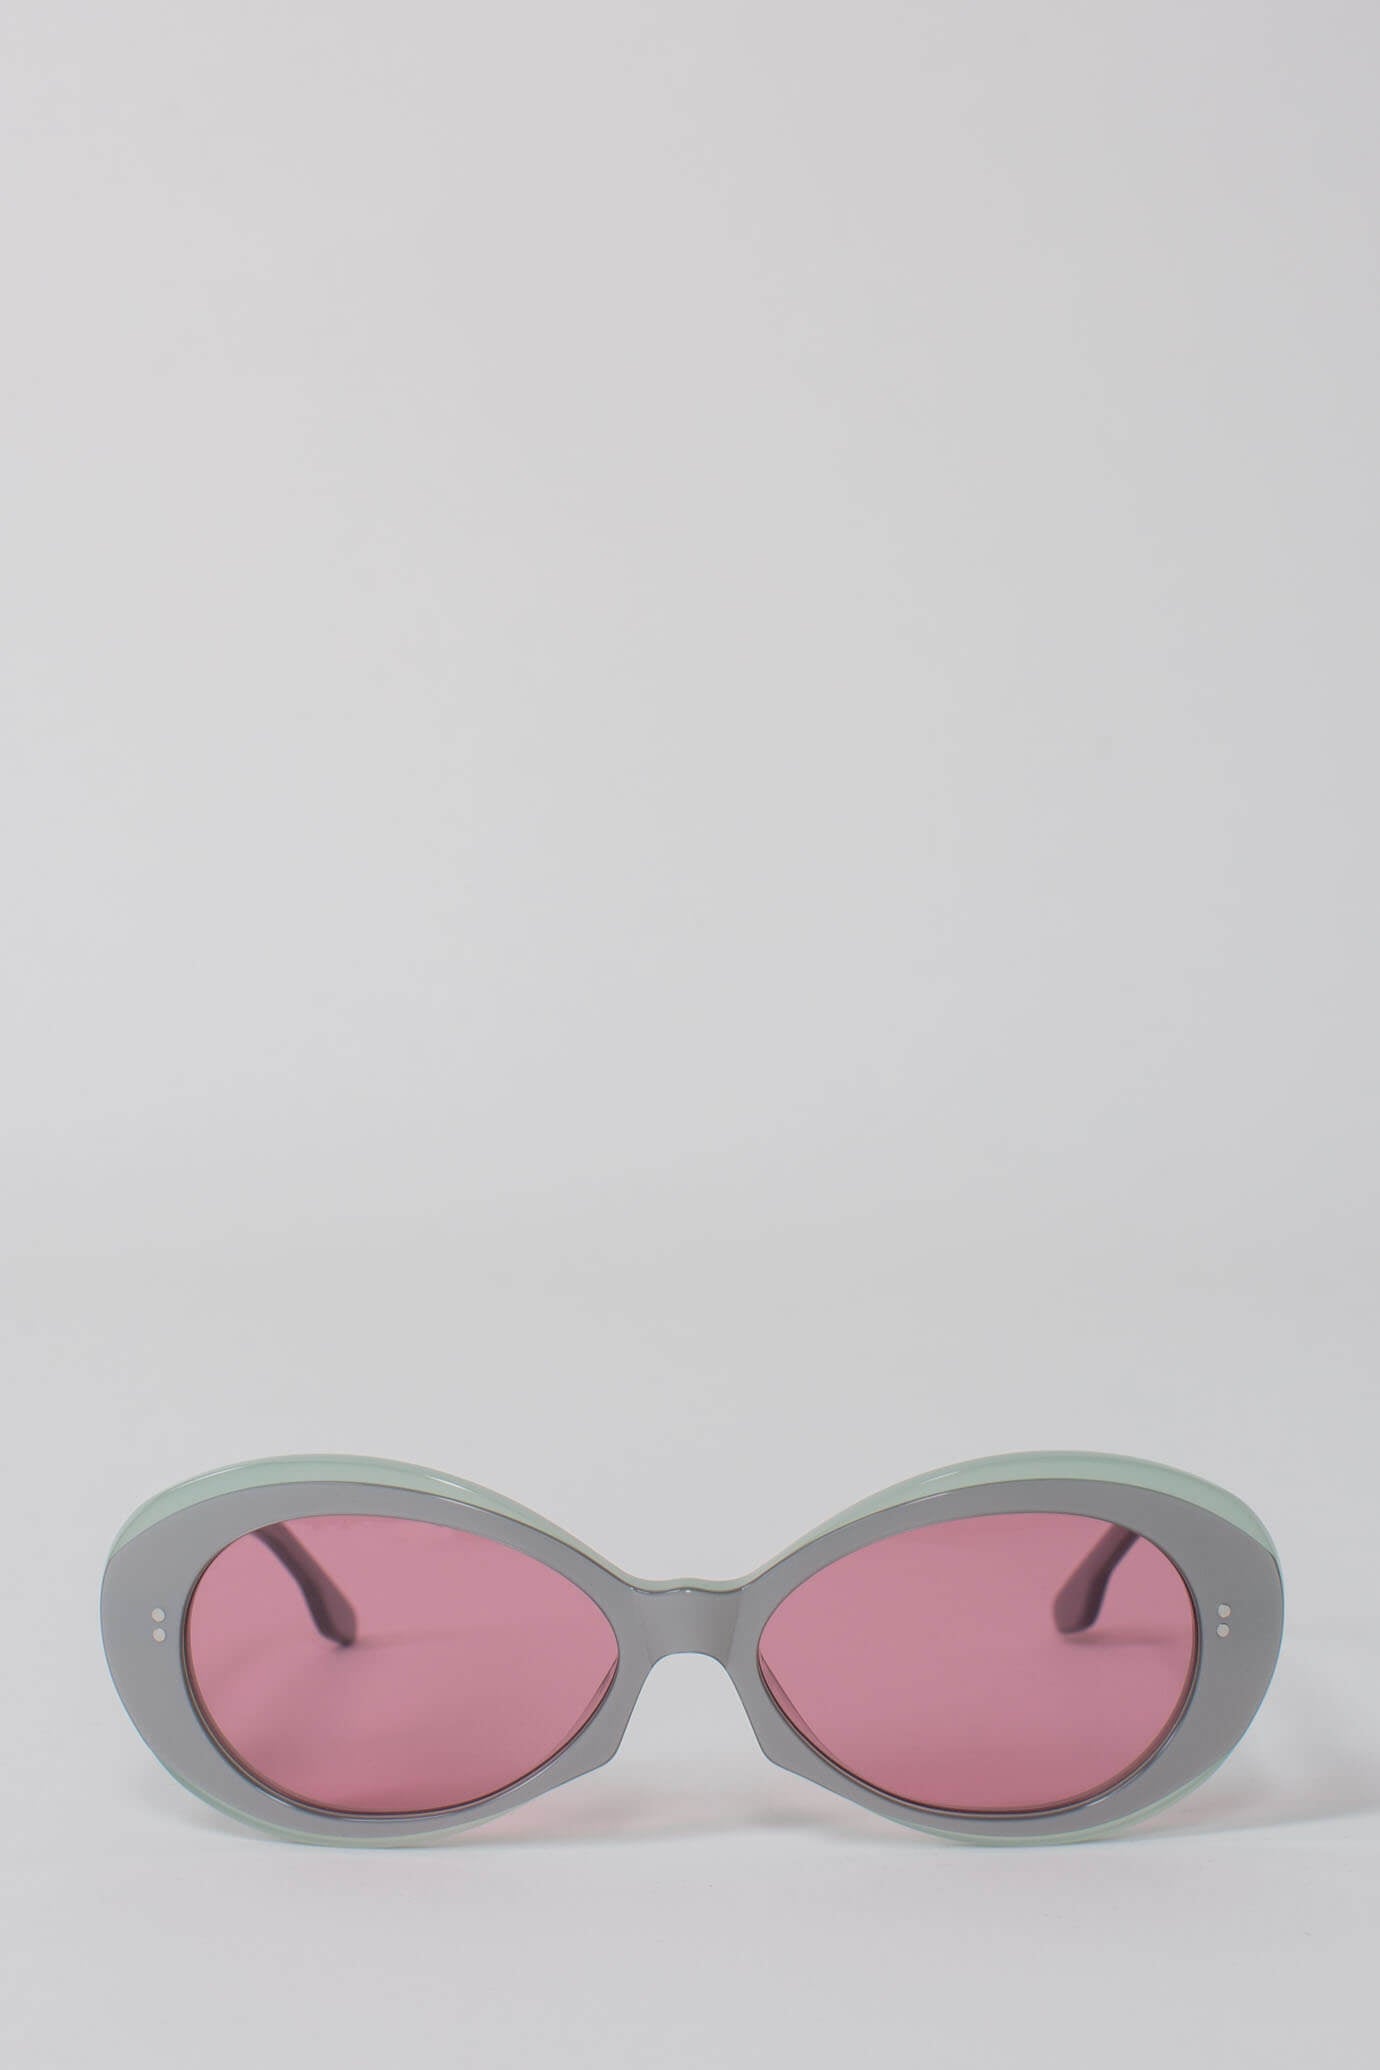 Rune Sunglasses